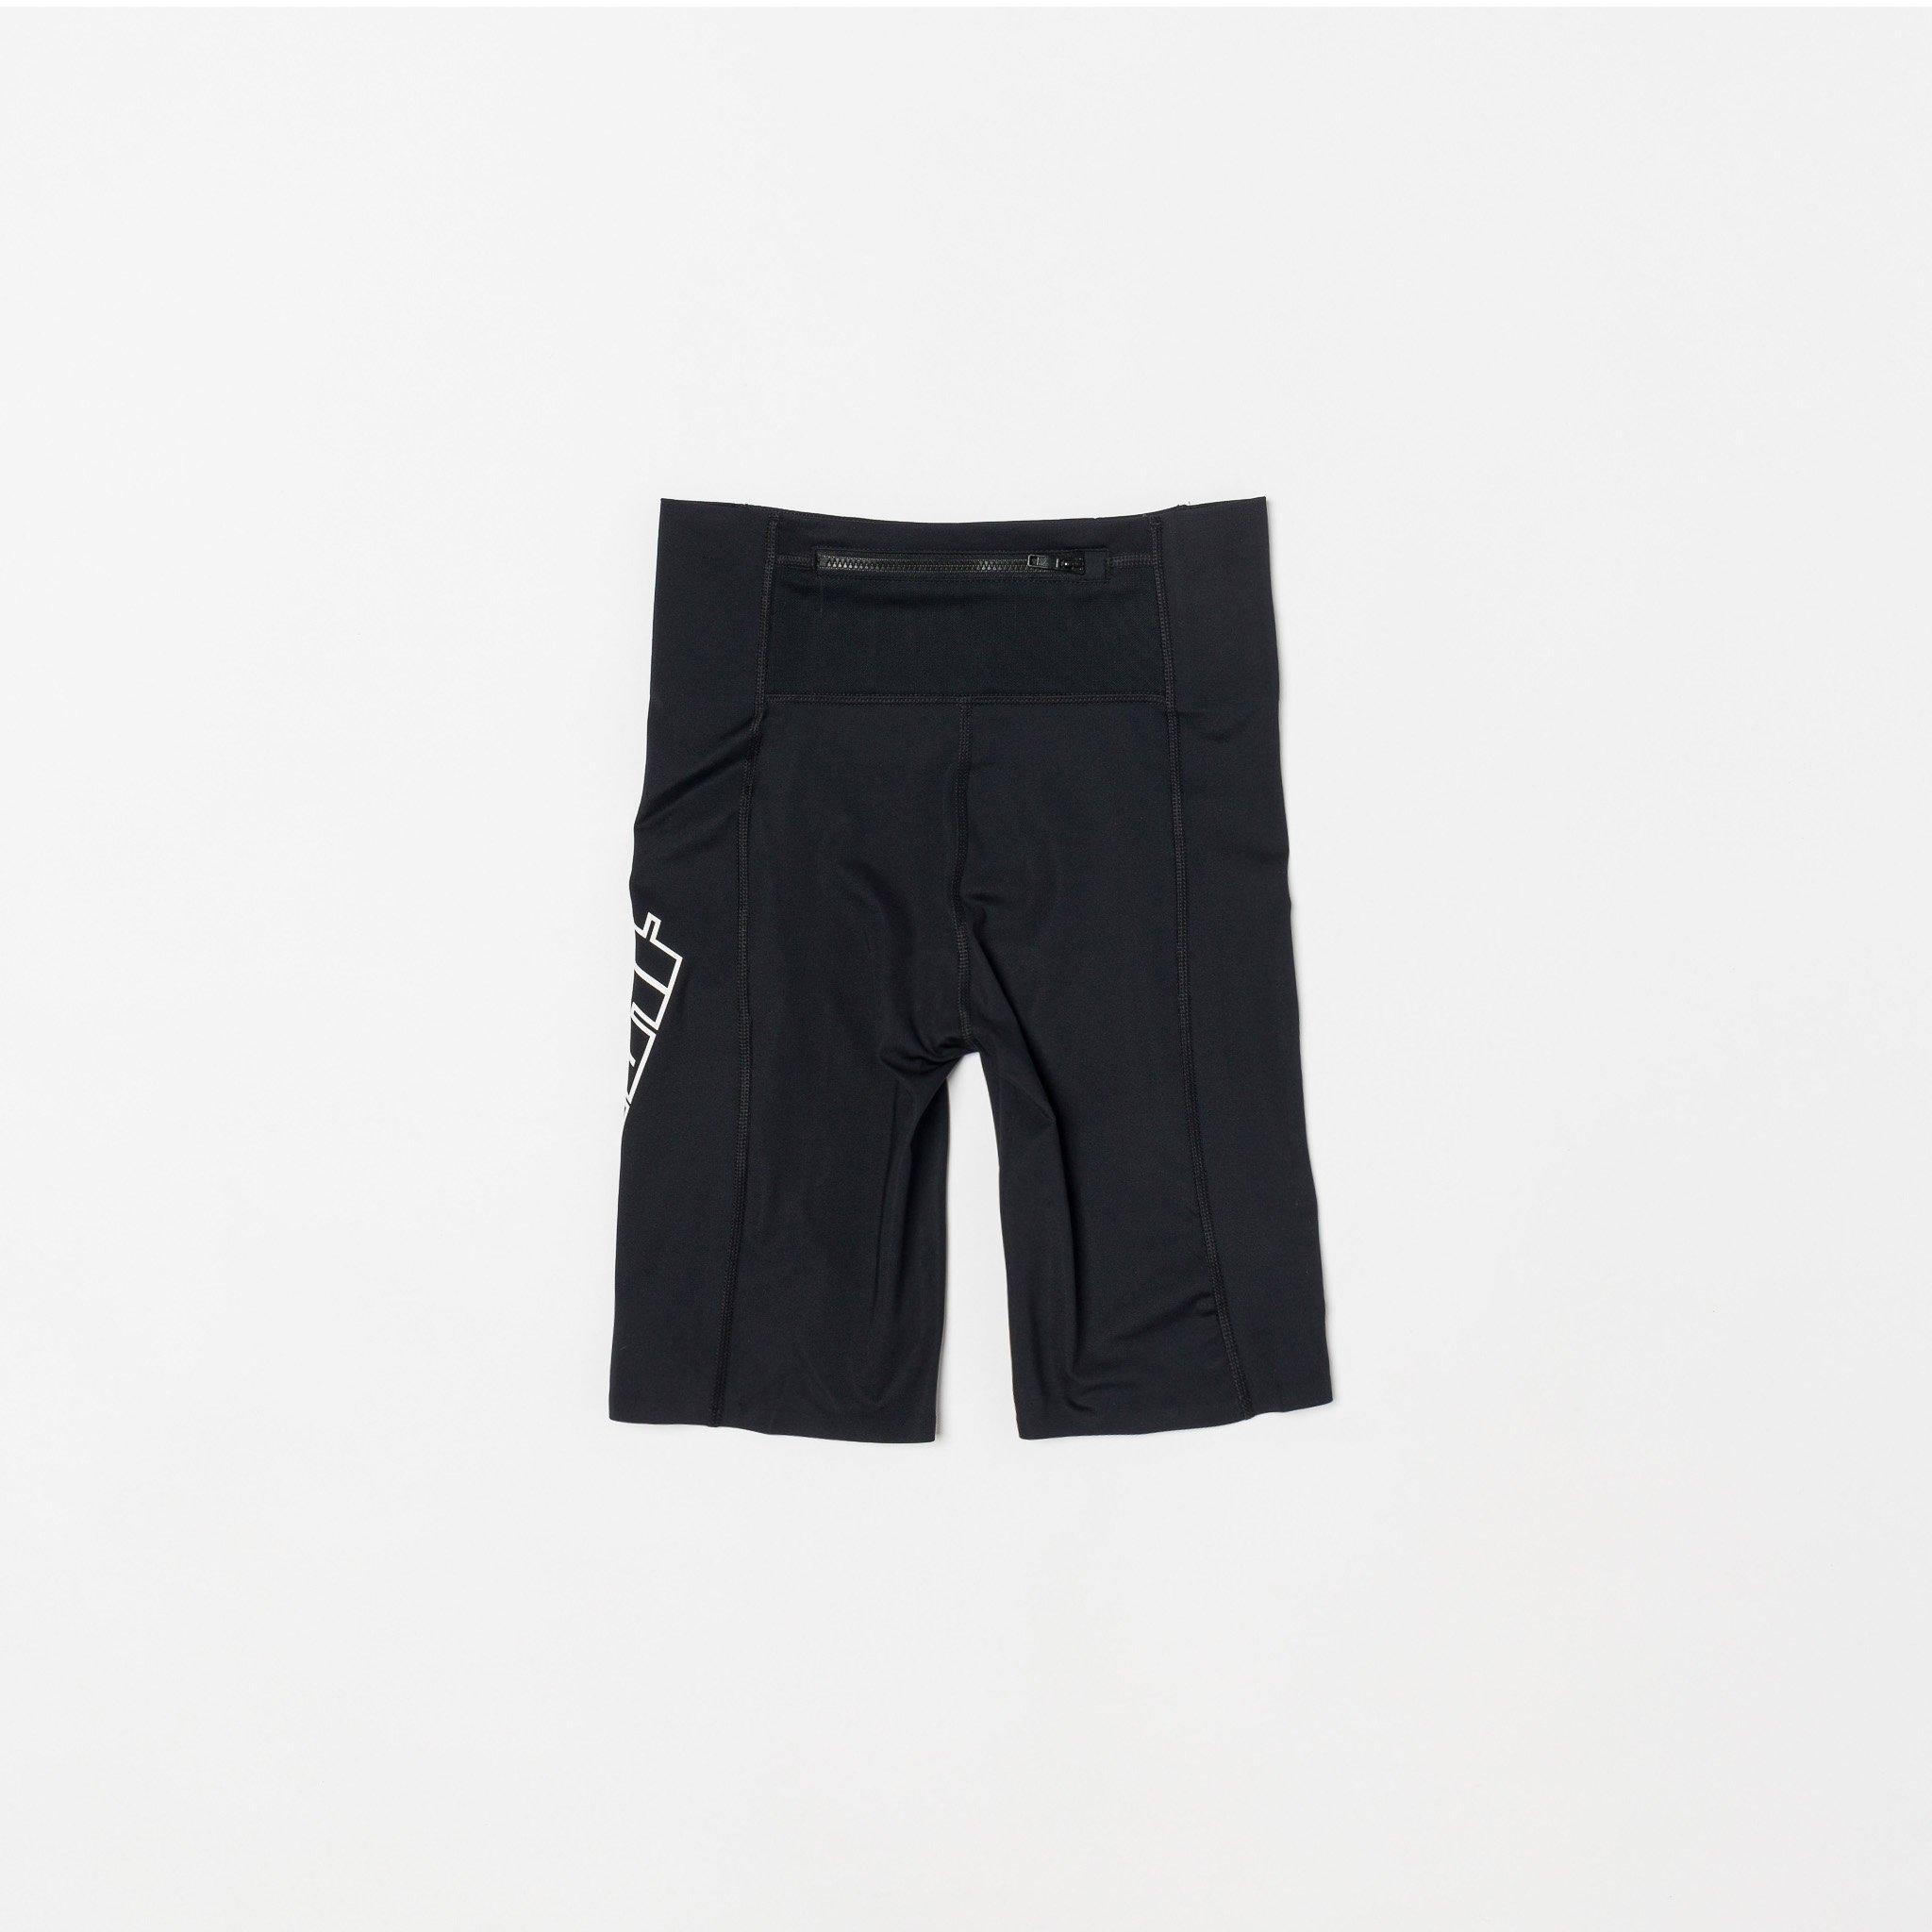 Buy > black biker shorts nike > in stock